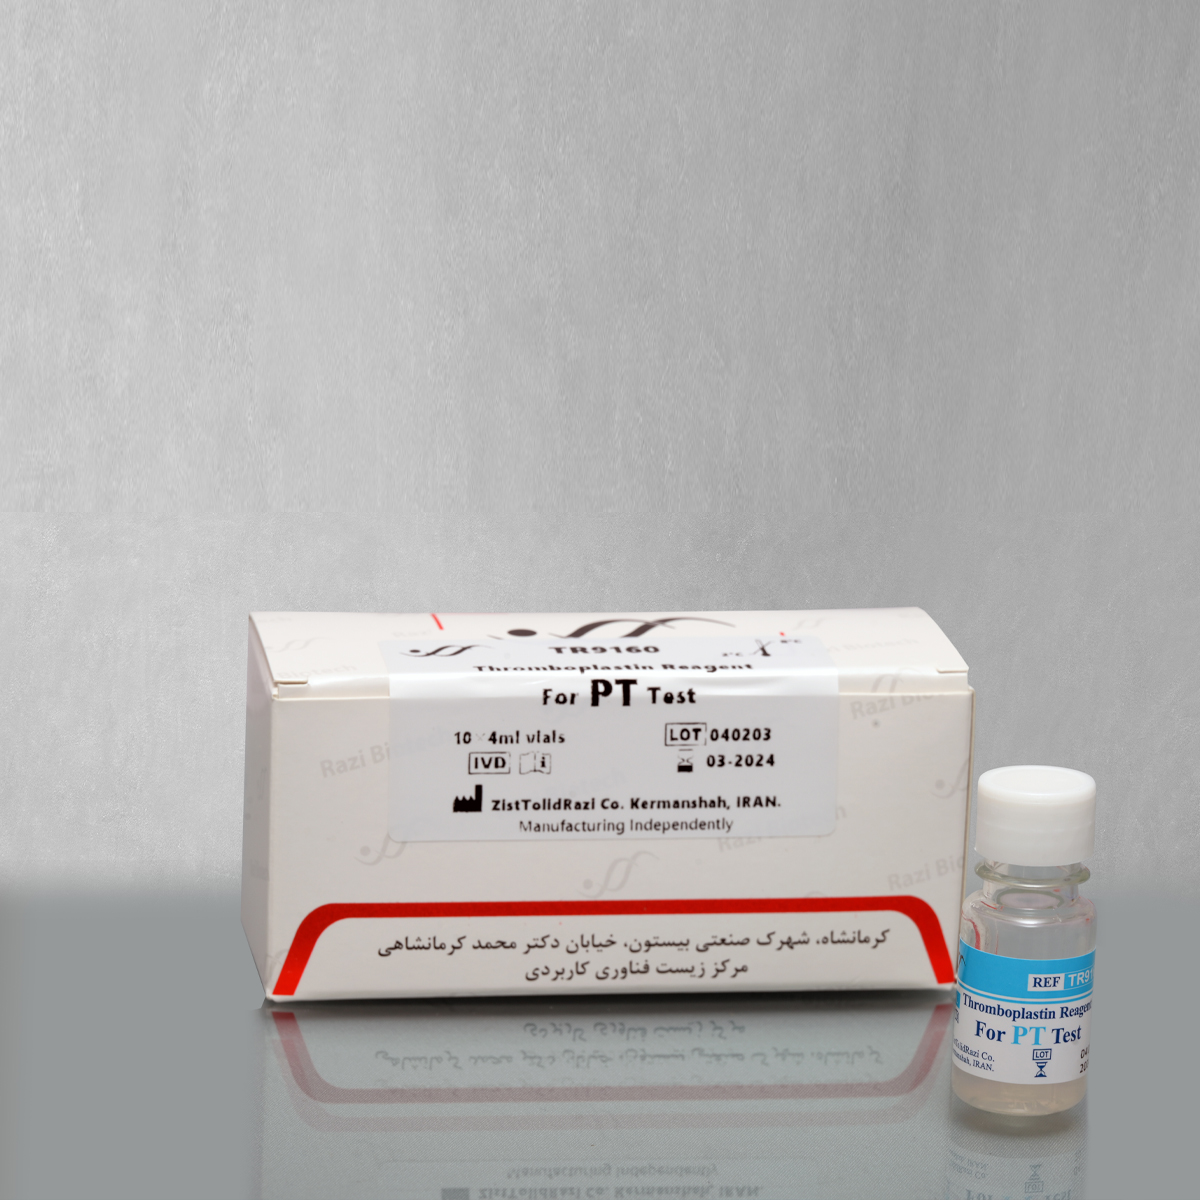 معرف ترومبوپلاستین PT - Thromboplastin Reagent  (PT Reagent) - زیست تولید رازی - کیت - هماتولوژی و بانک خون - نوآوران طب بین الملل